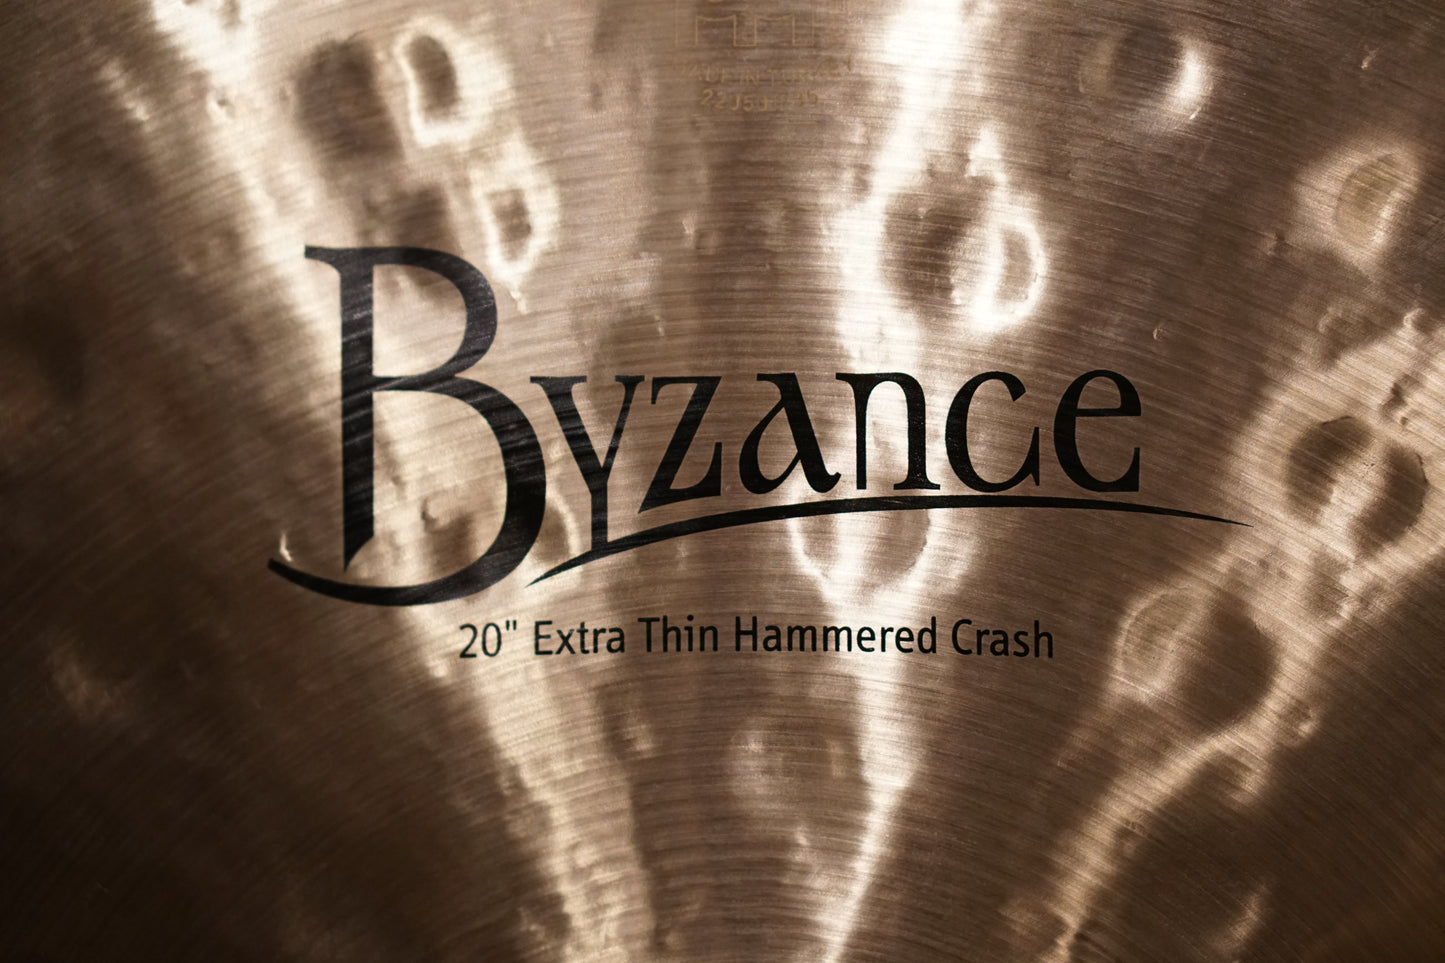 Meinl 20" Byzance Extra Thin Hammered Crash - 1624g